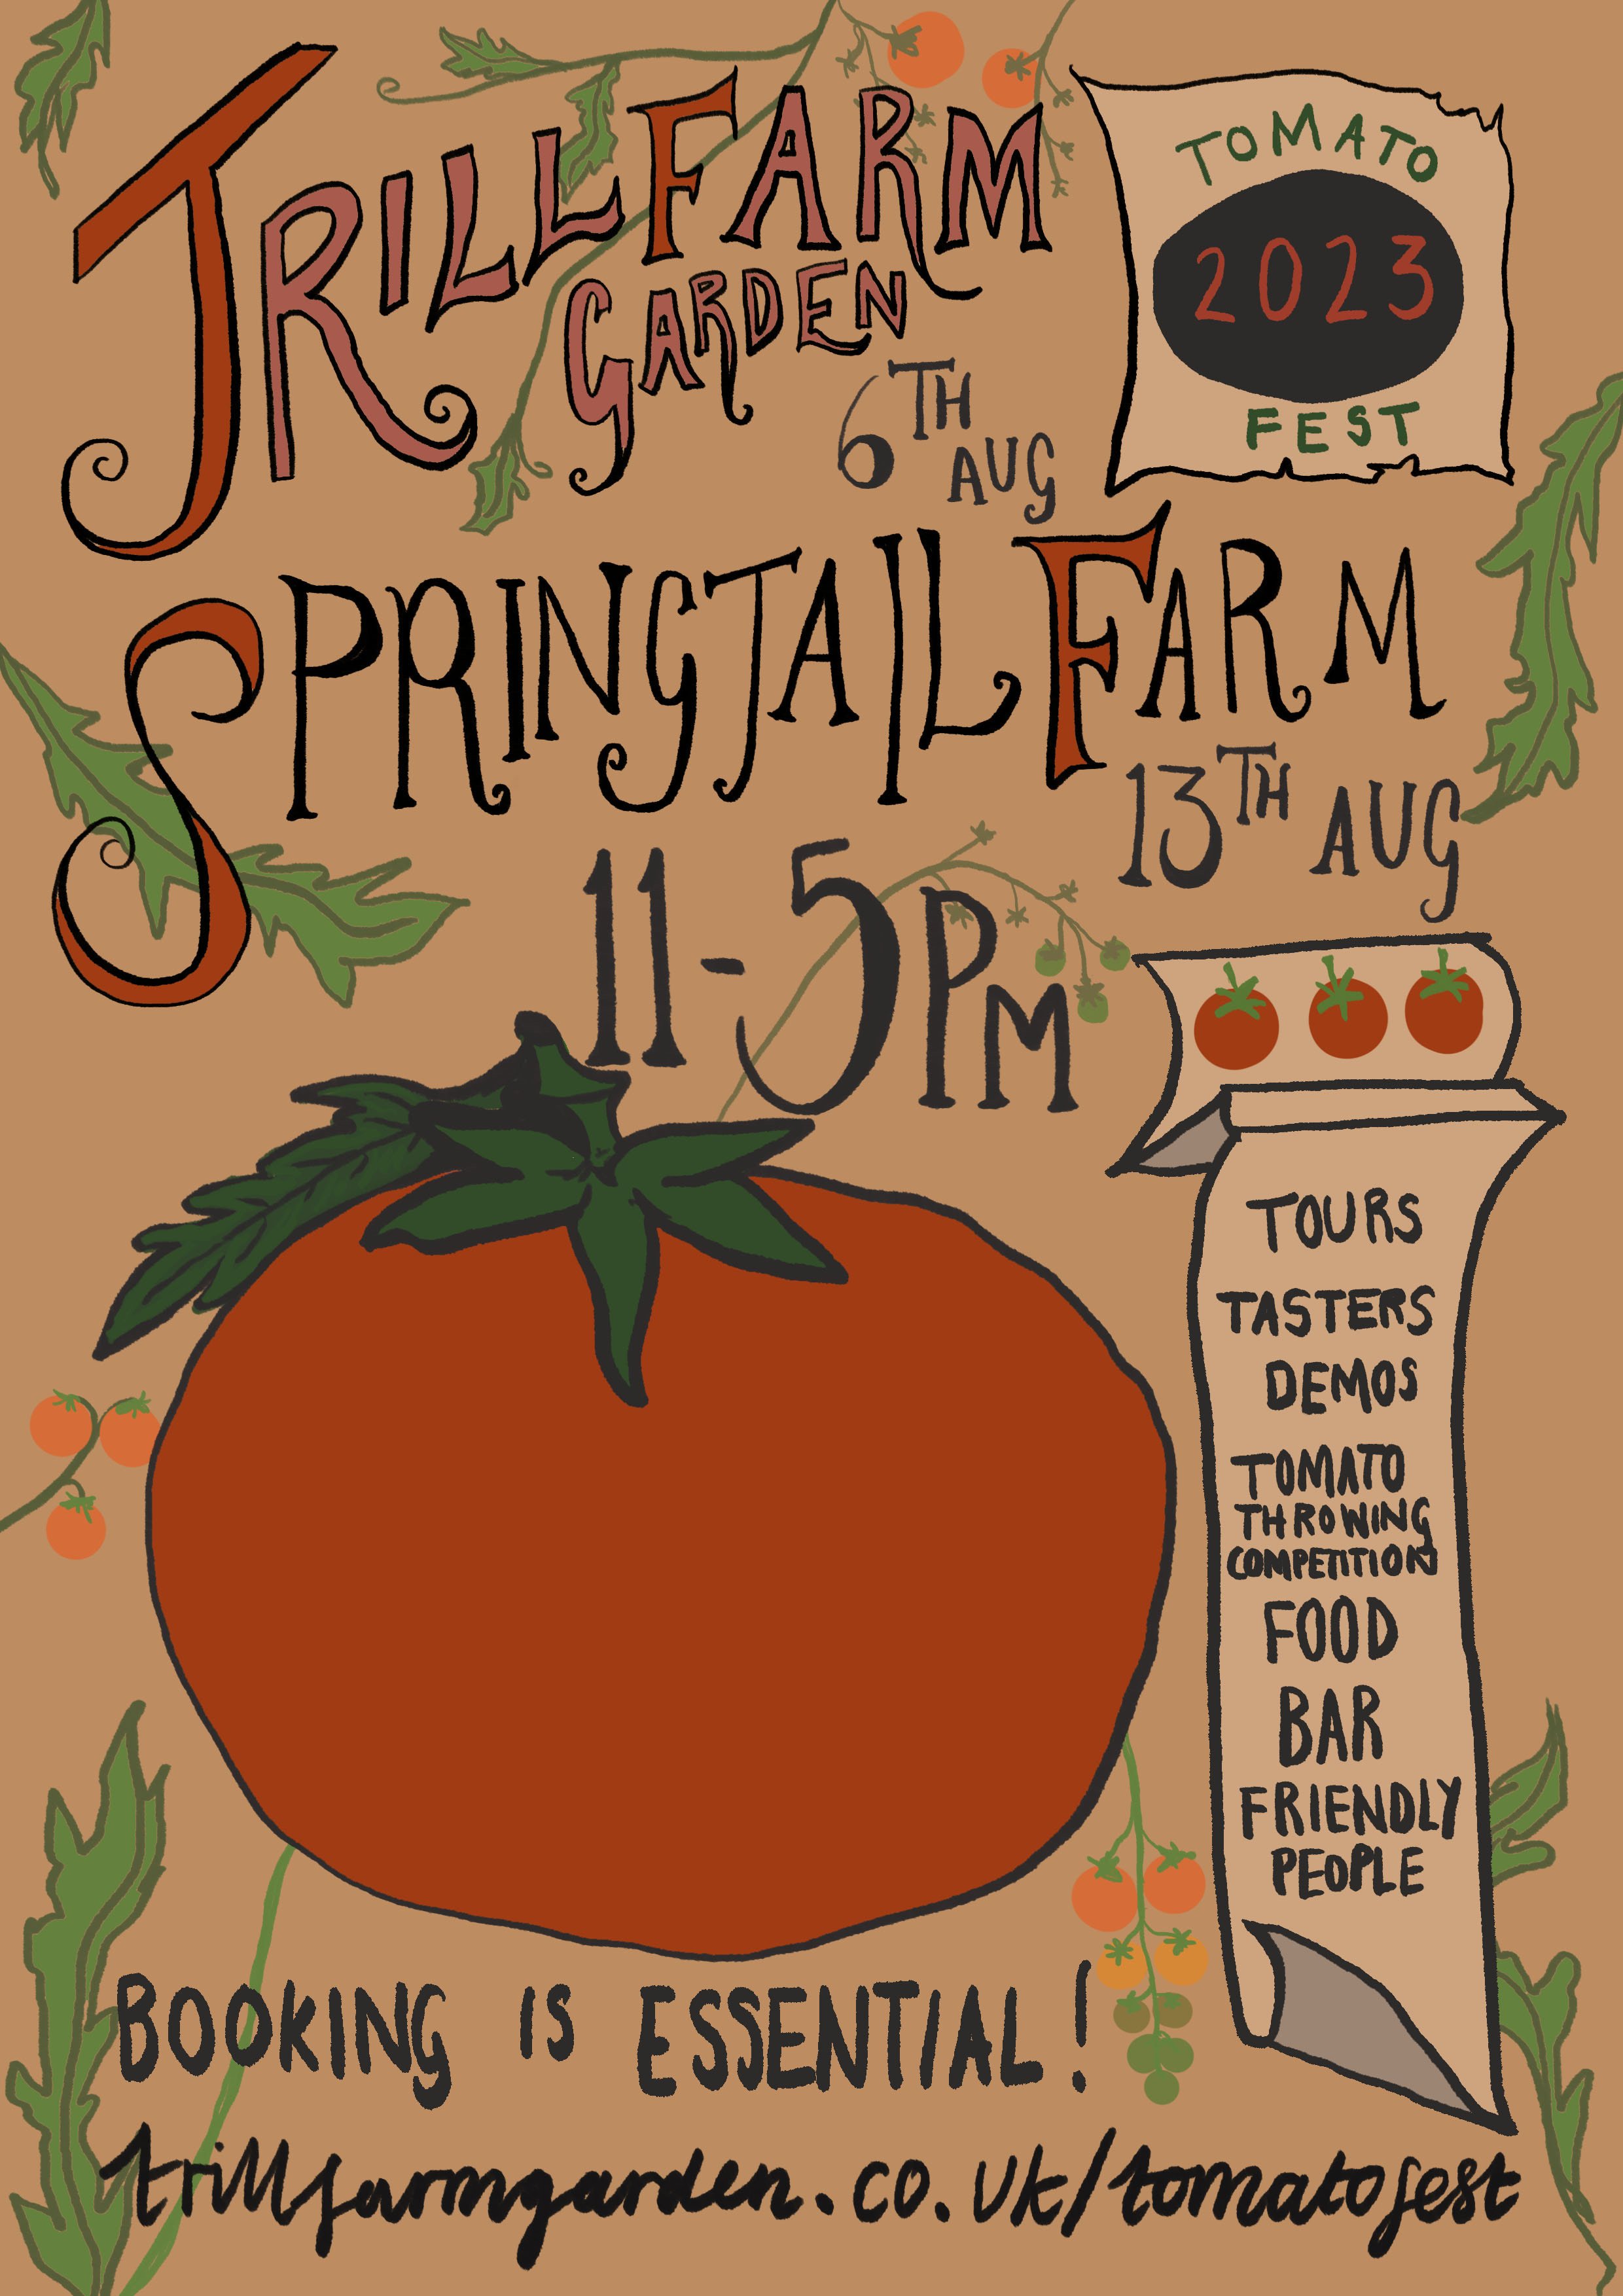 Springtail Farm Tomato Fest 2023